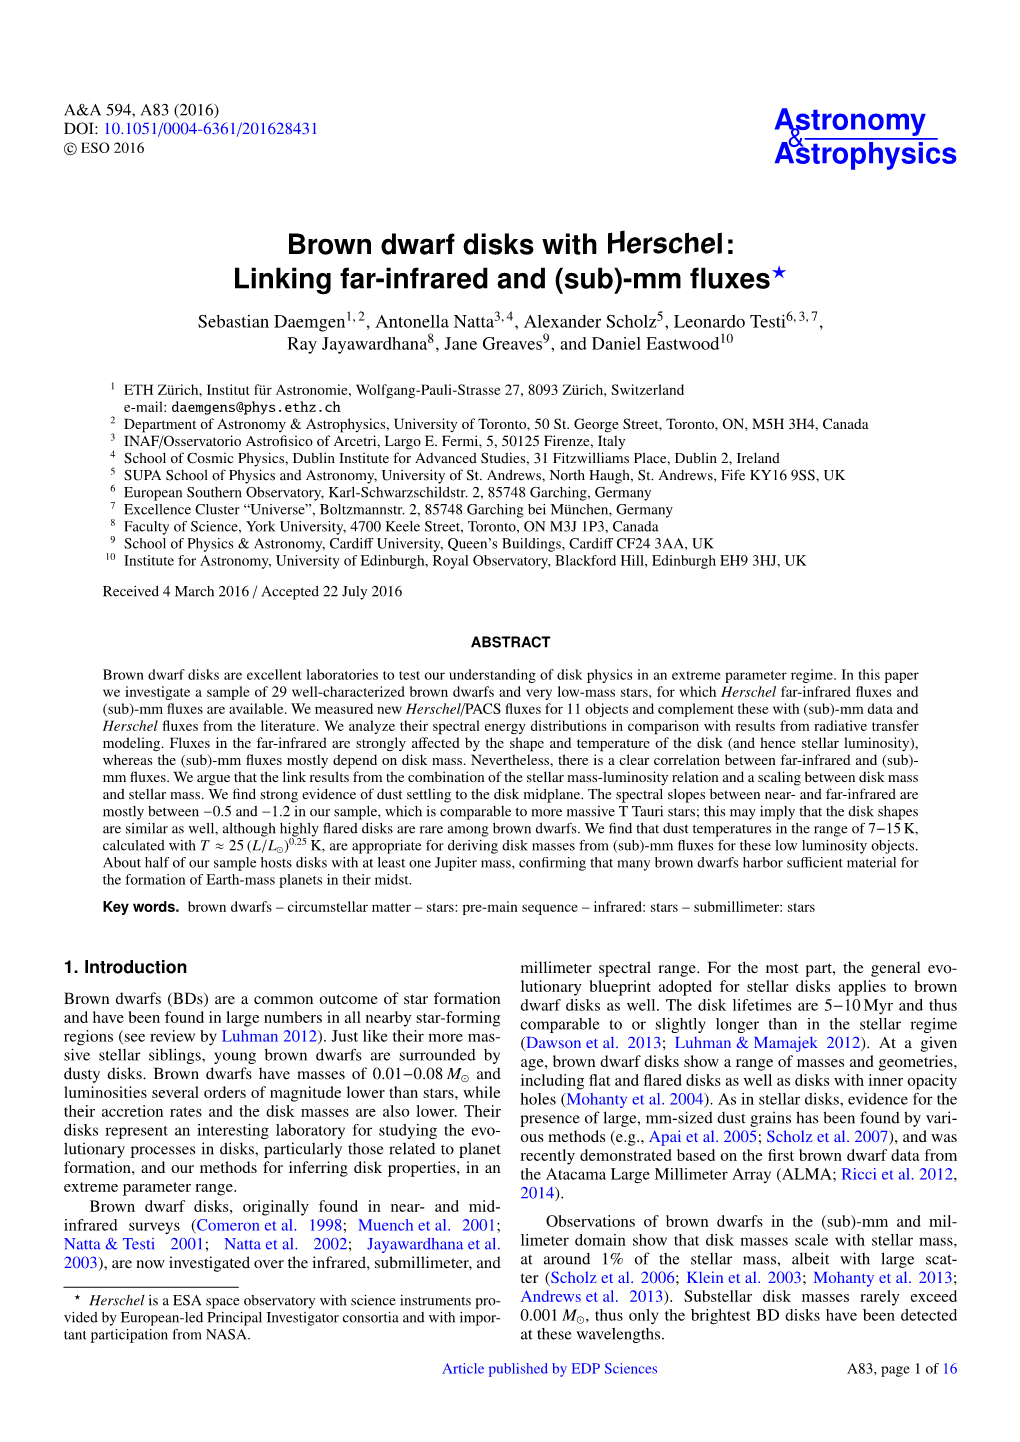 Brown Dwarf Disks with Herschel: Linking Far-Infrared